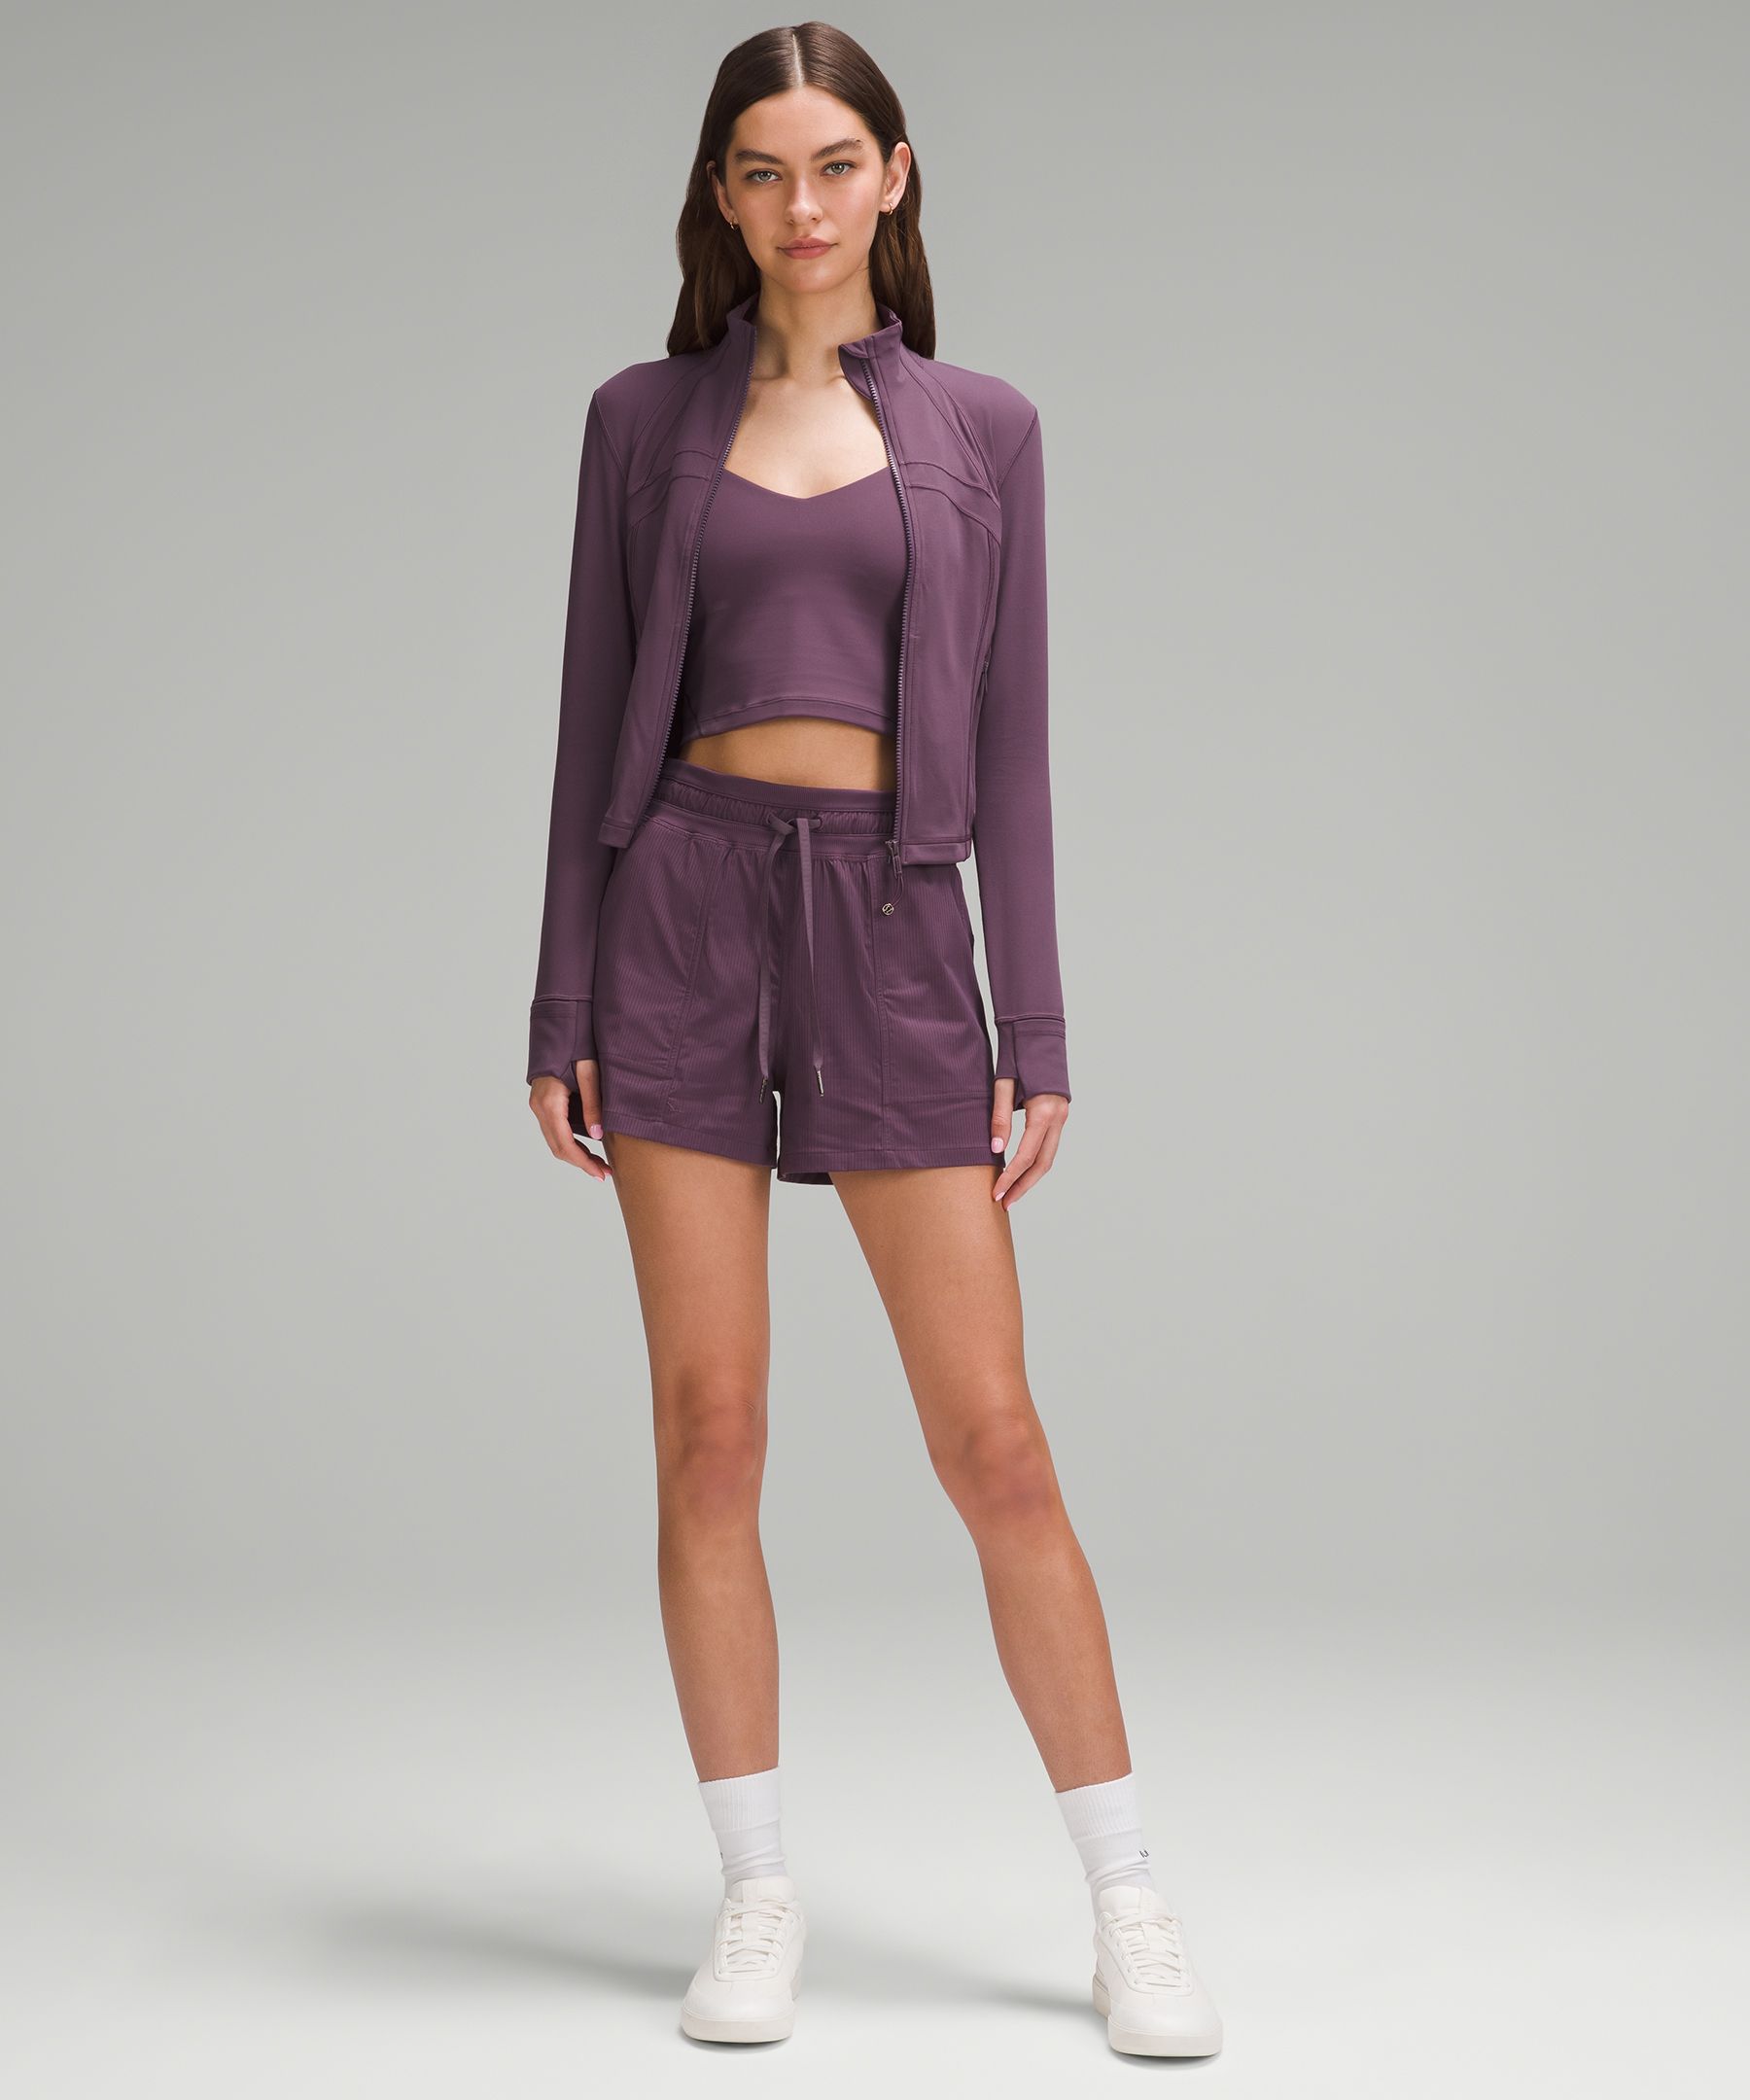 Women's Hoodies & Sweatshirts | lululemon